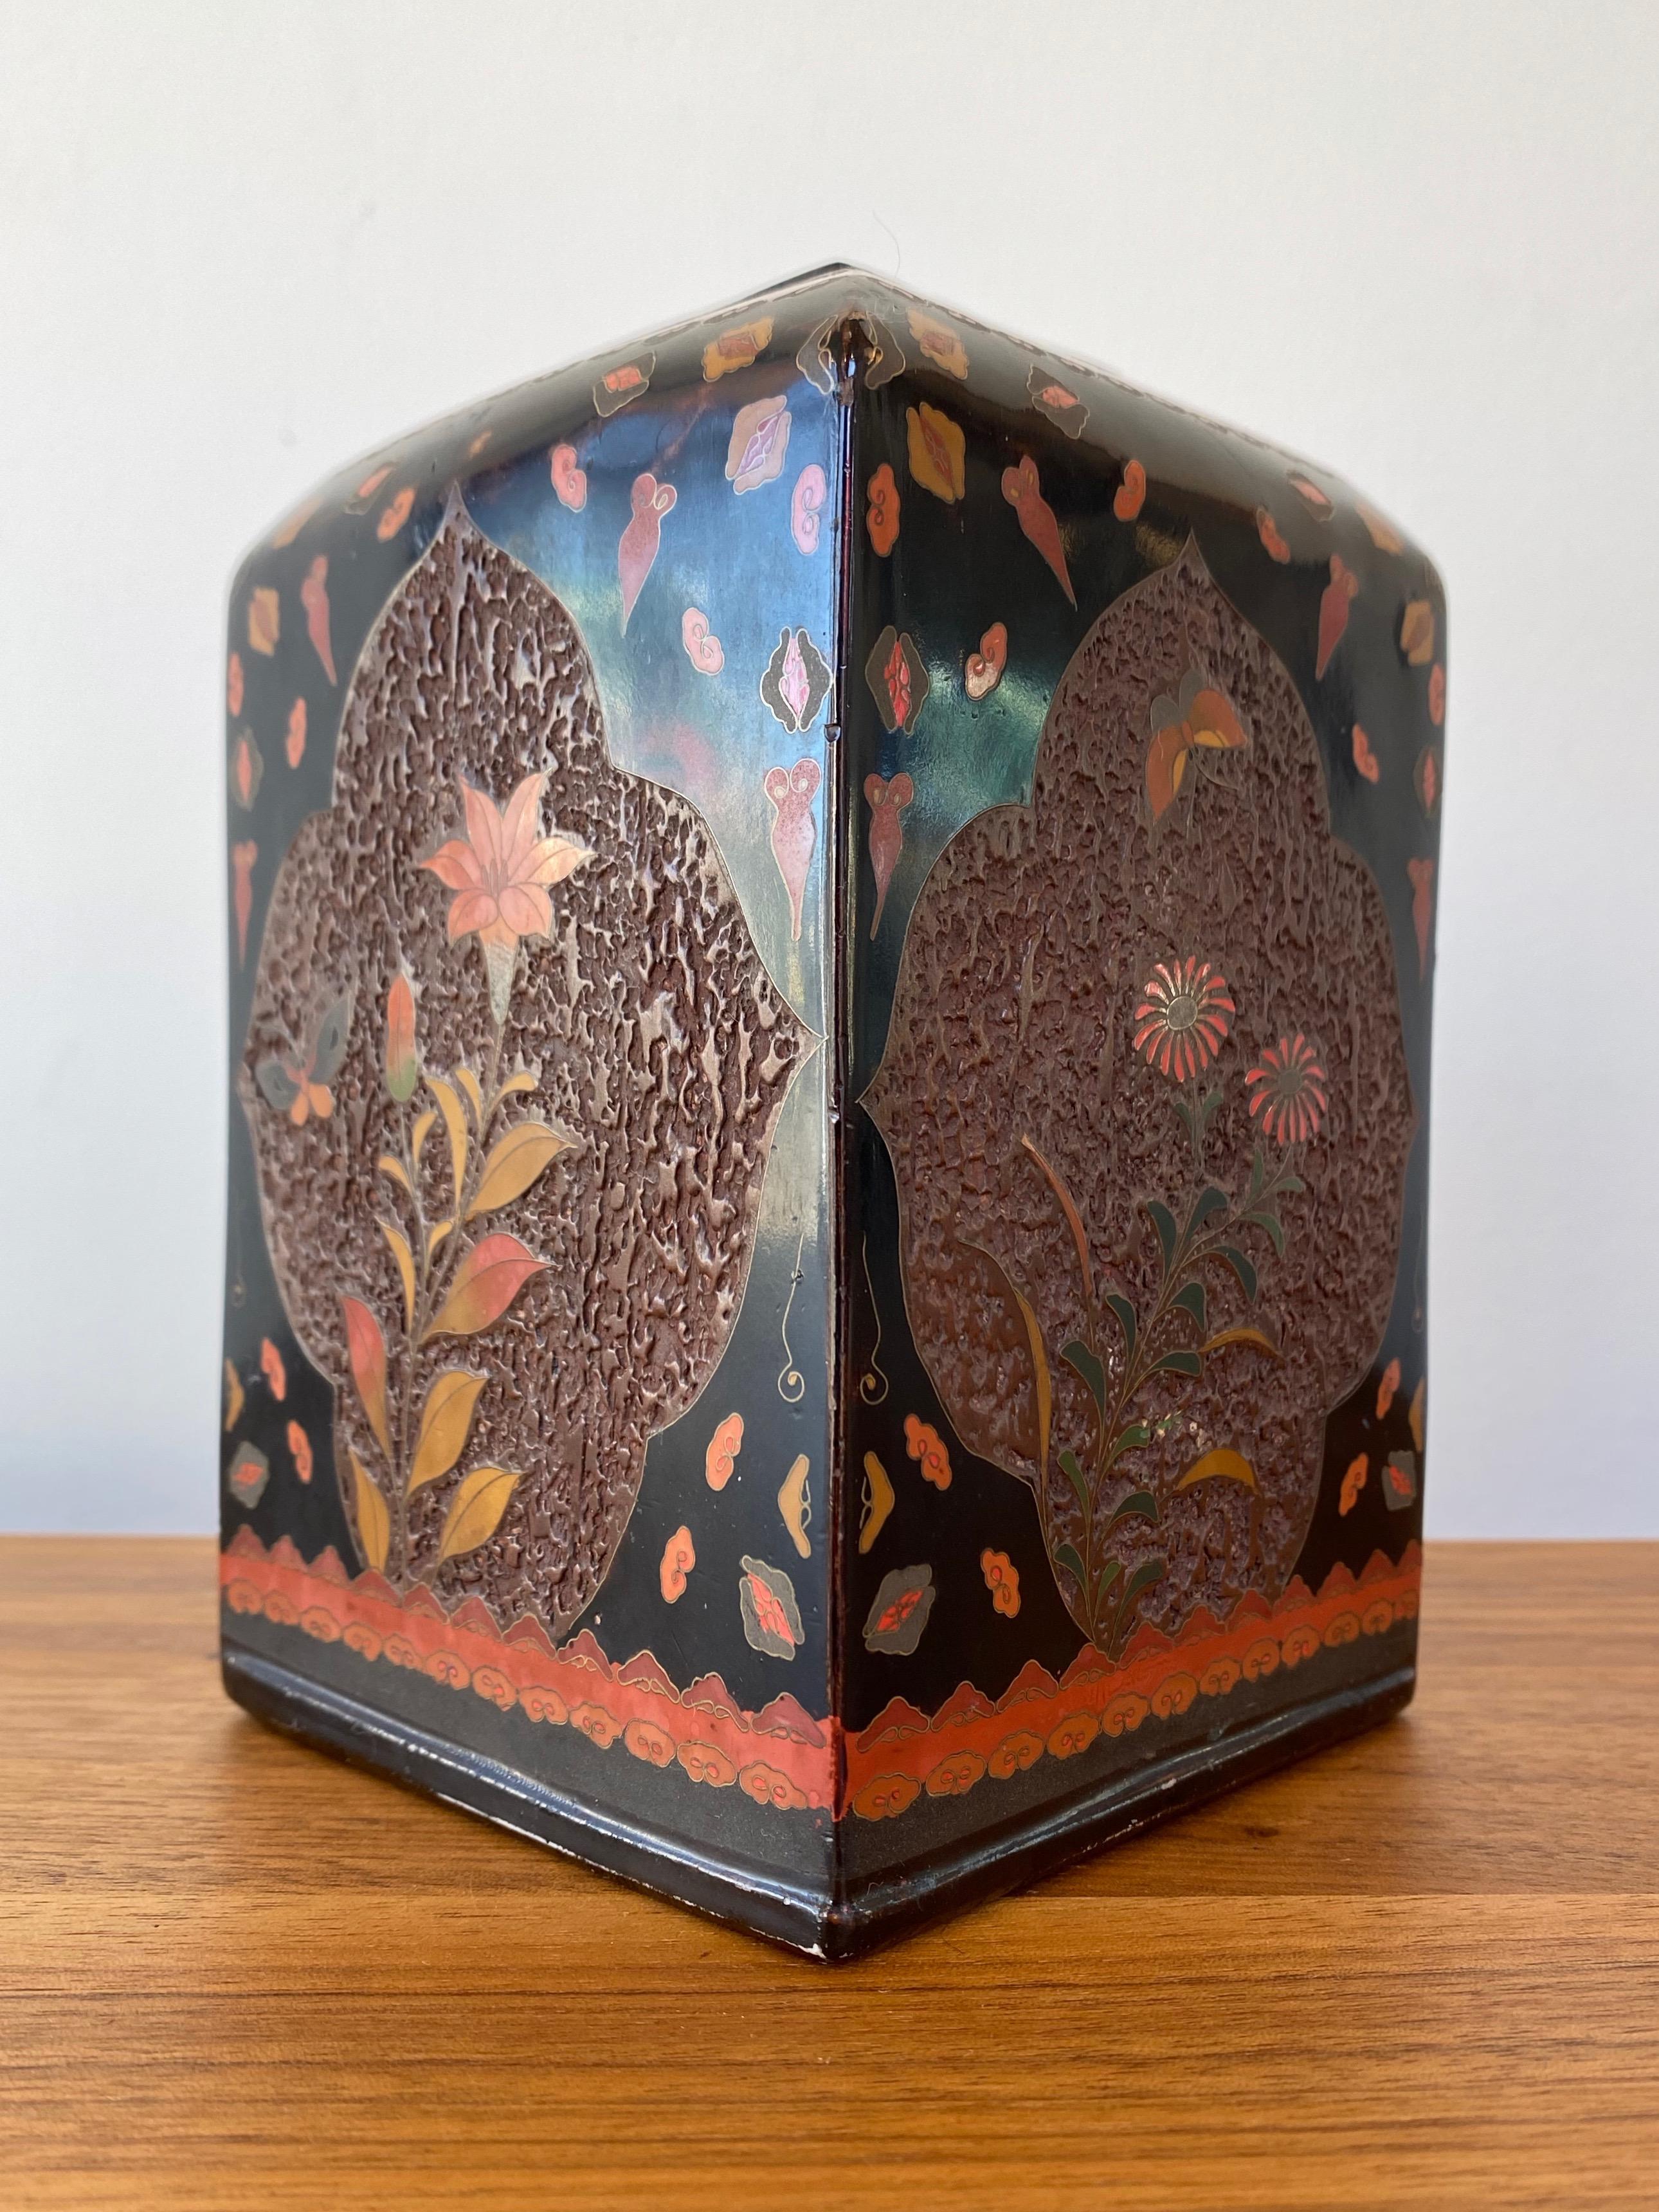 Japanese Meiji Jiki-Shippo “Tree-Bark” Cloisonné Porcelain Vase, Early 1900s For Sale 2